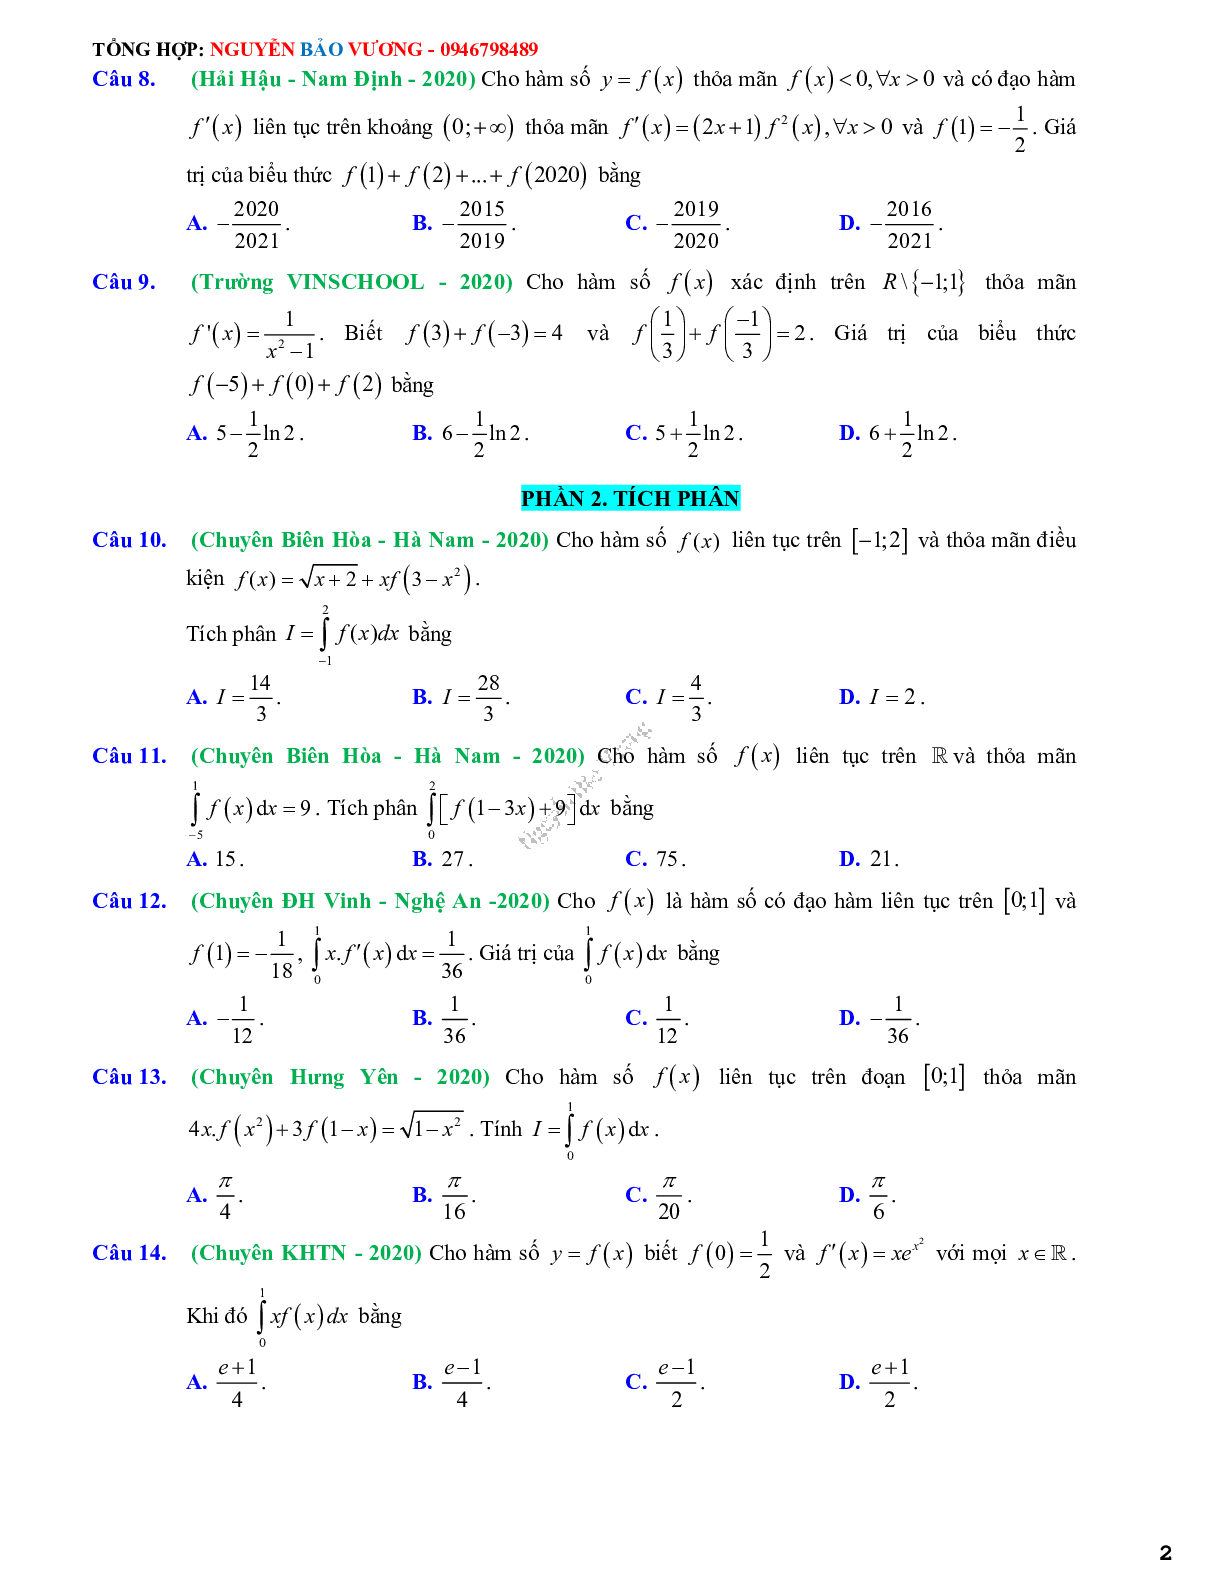 68 Bài tập vận dụng nguyên hàm tích phân và ứng dụng - có đáp án và lời giải (trang 2)